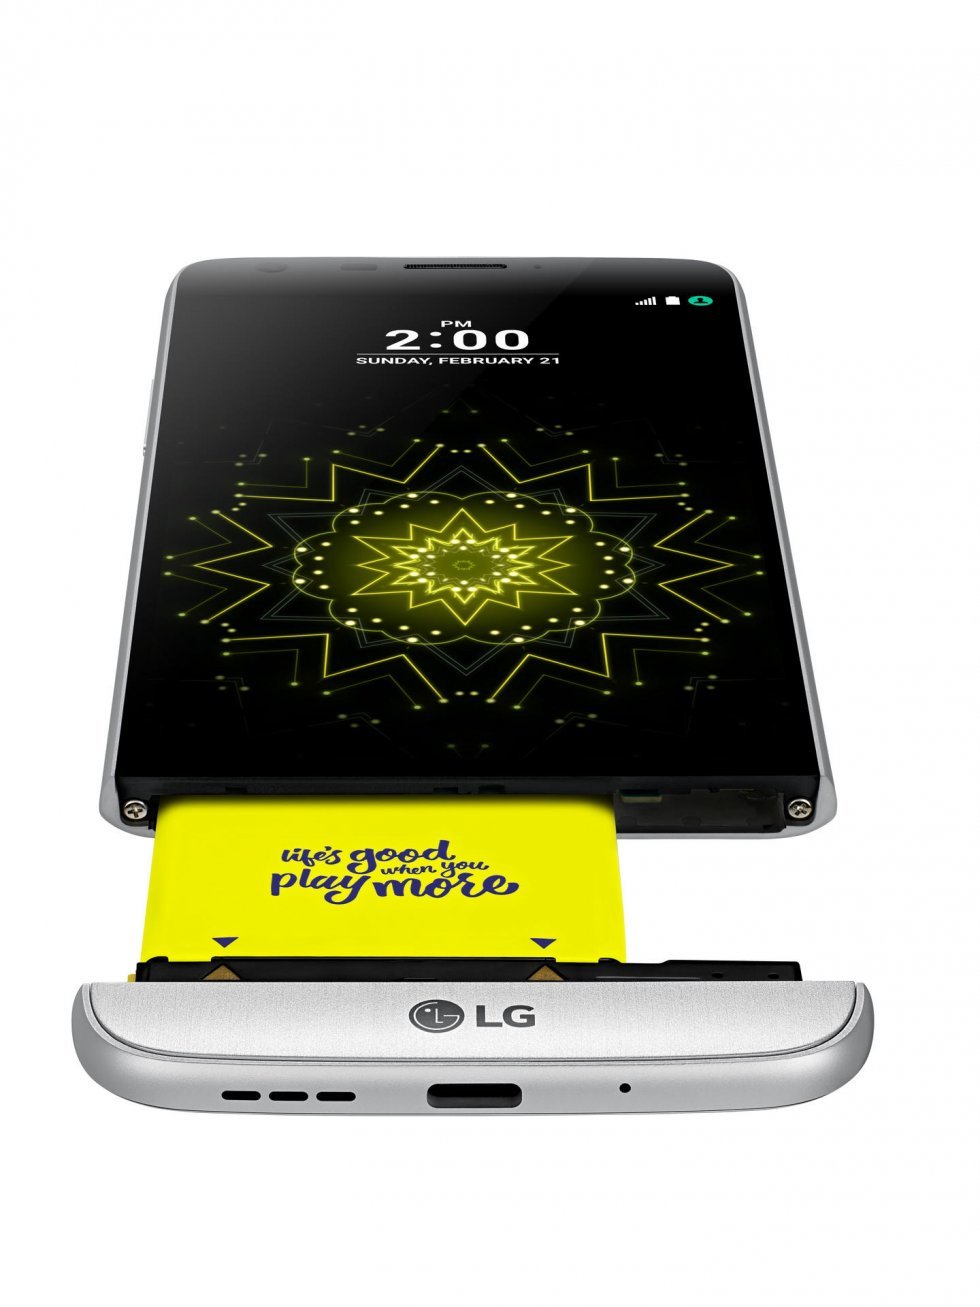 LG G5 - en smartphone med udskiftelige moduler